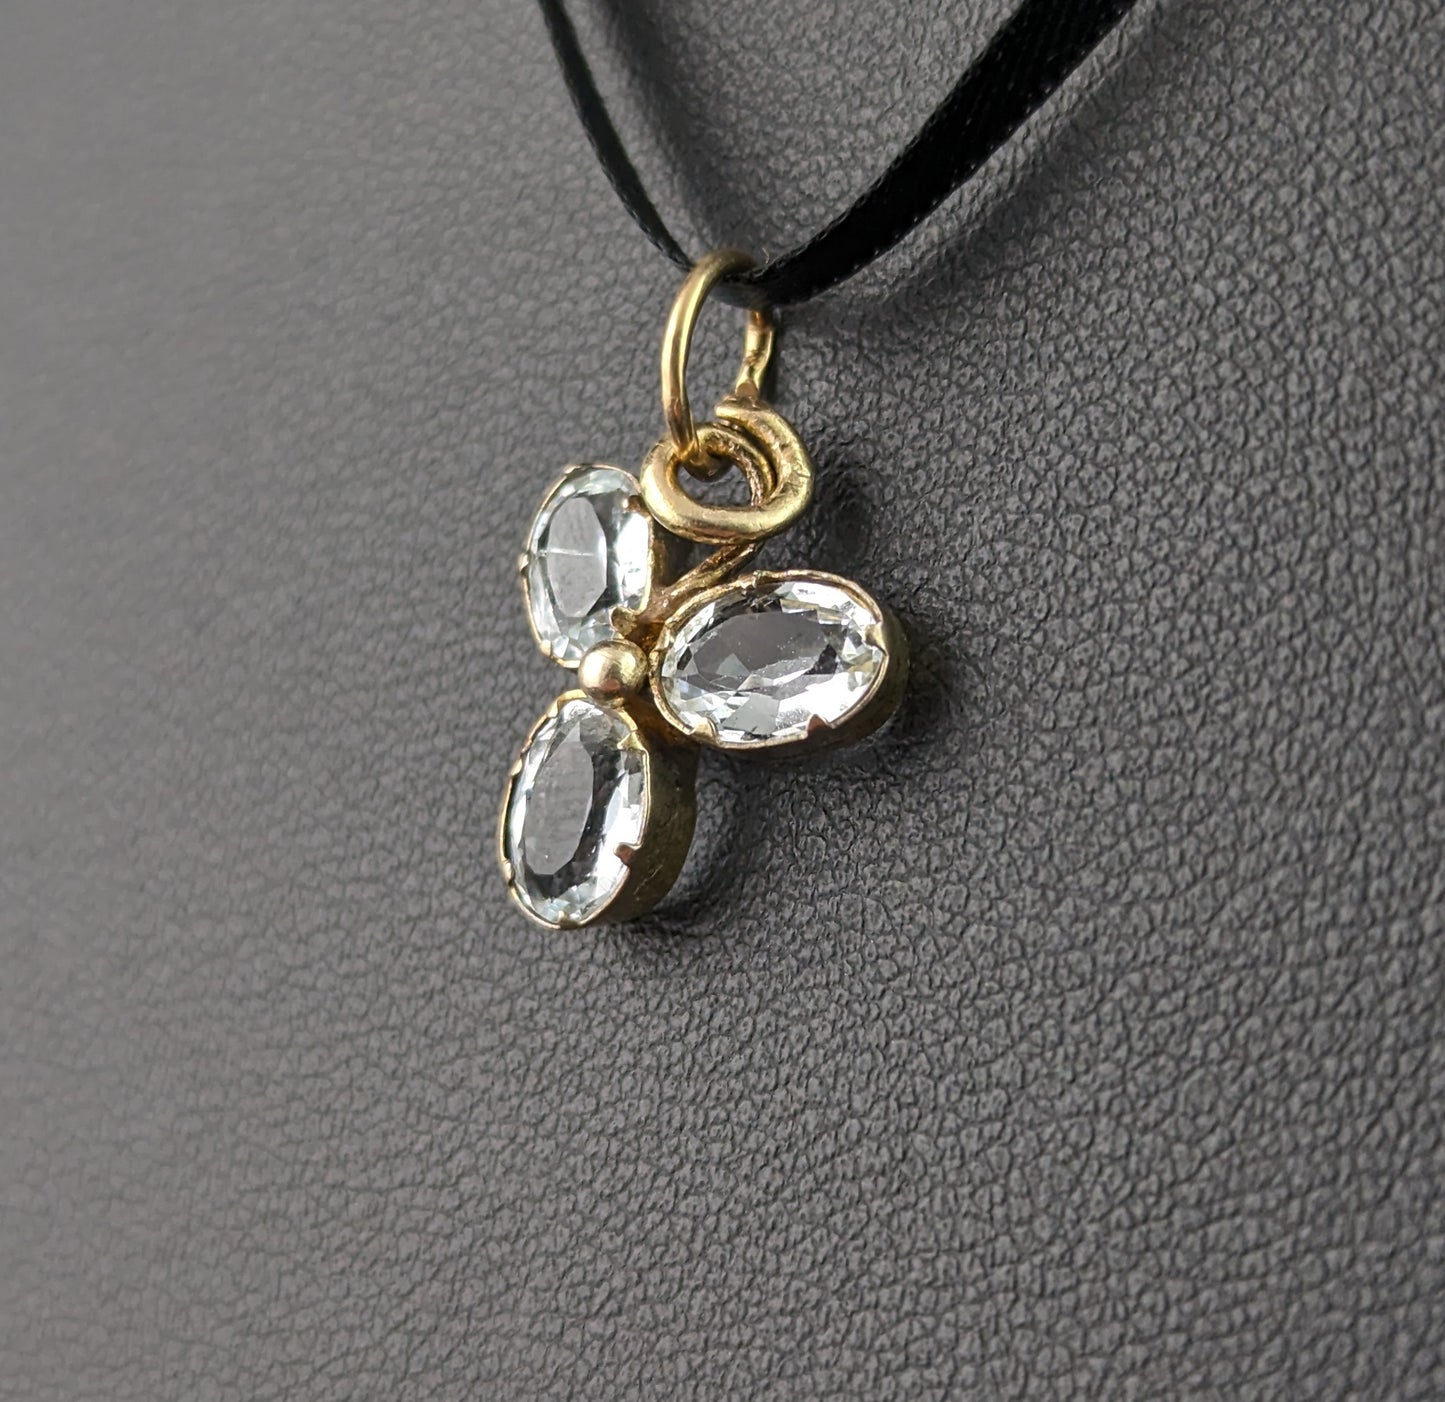 Antique Aquamarine shamrock pendant, charm, 9ct gold